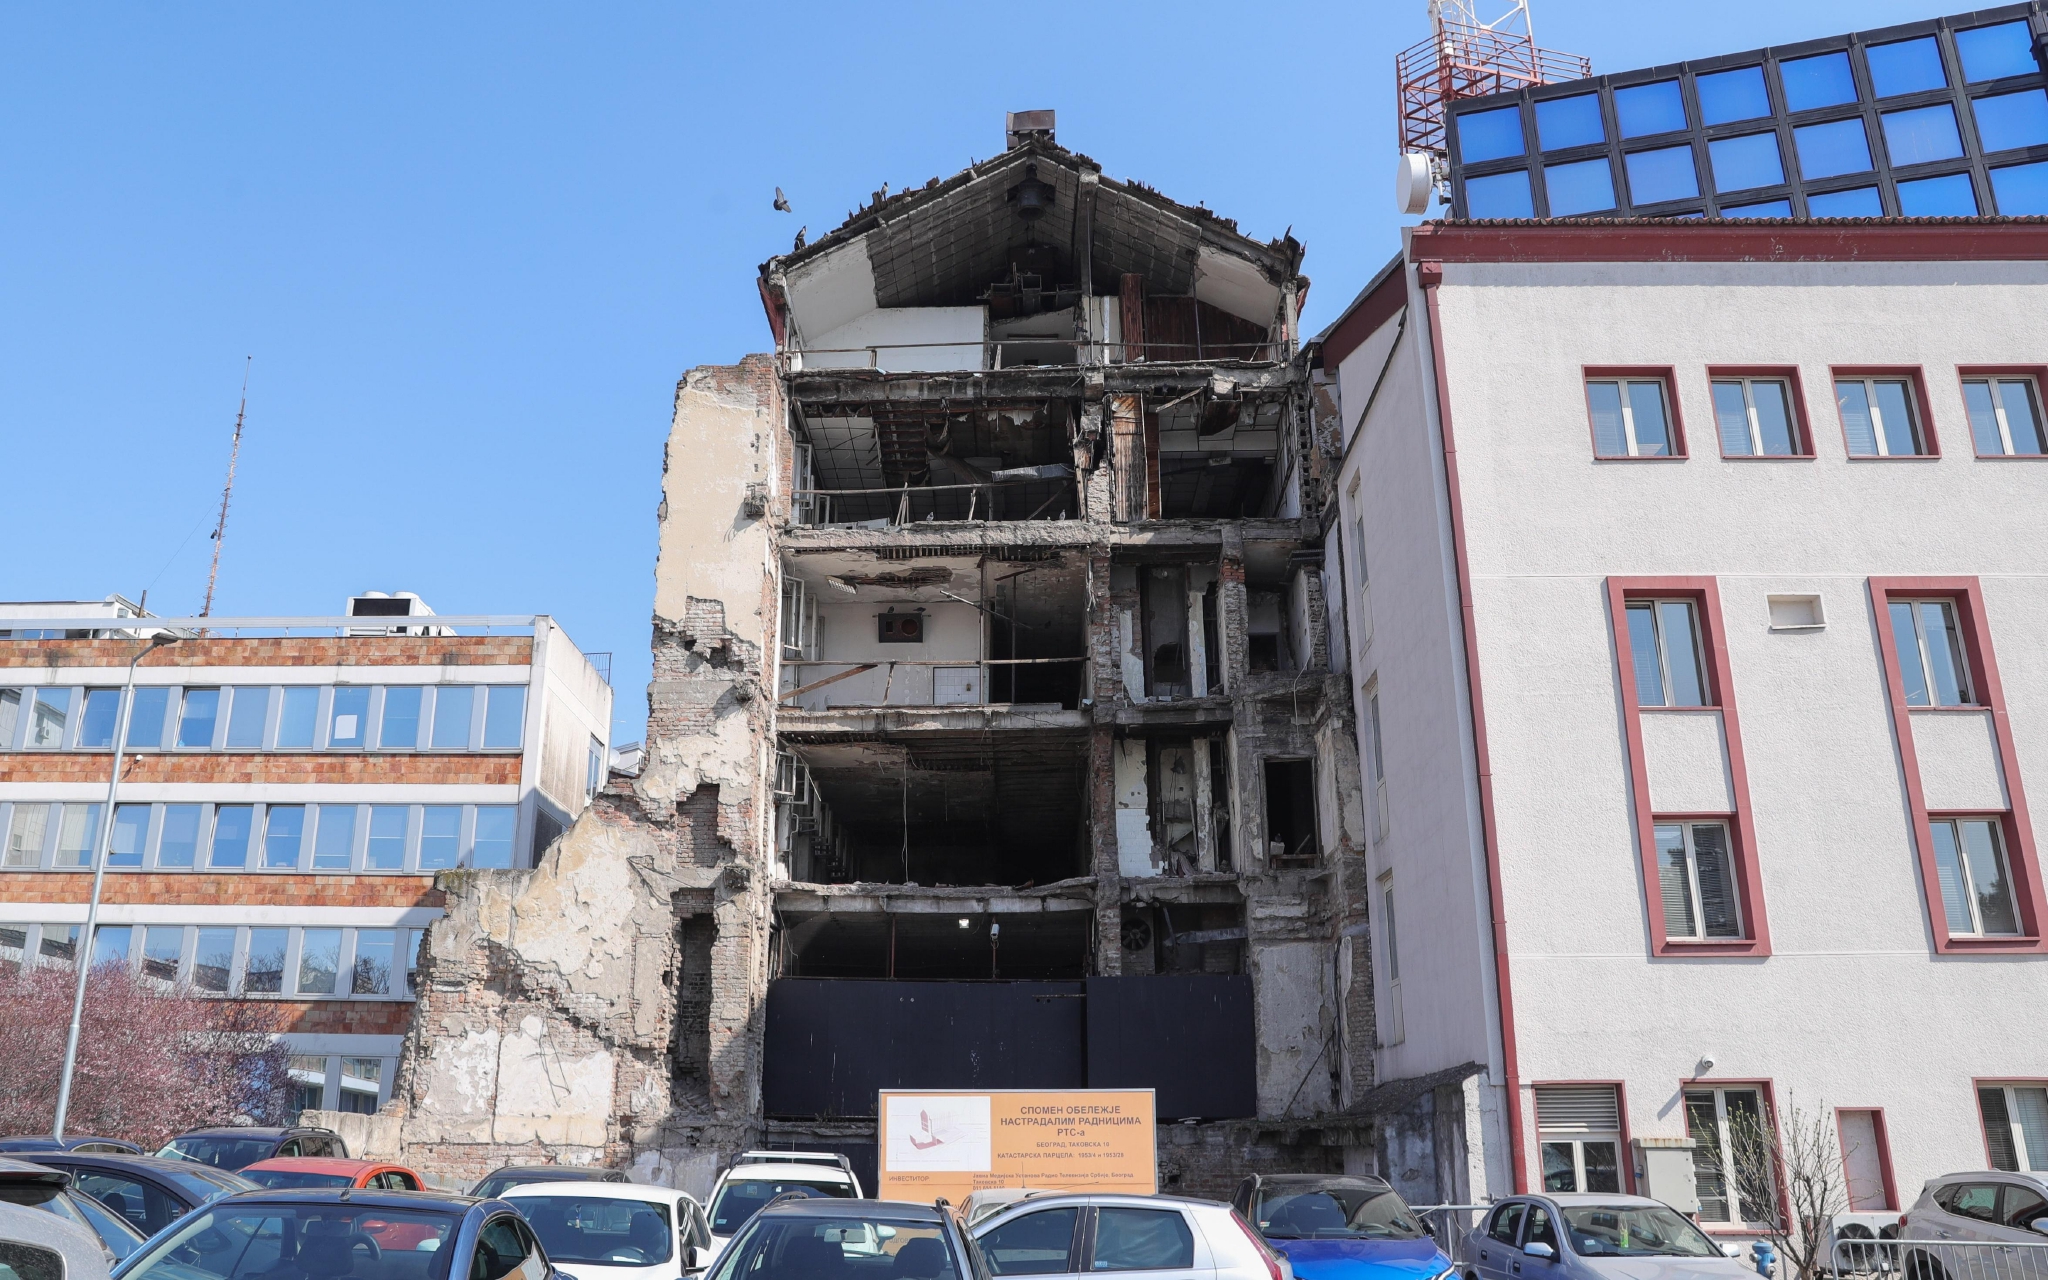 ▲这是2022年3月21日在塞尔维亚贝尔格莱德拍摄的曾经遭遇空袭的塞尔维亚广播电视台大楼。 图/新华社